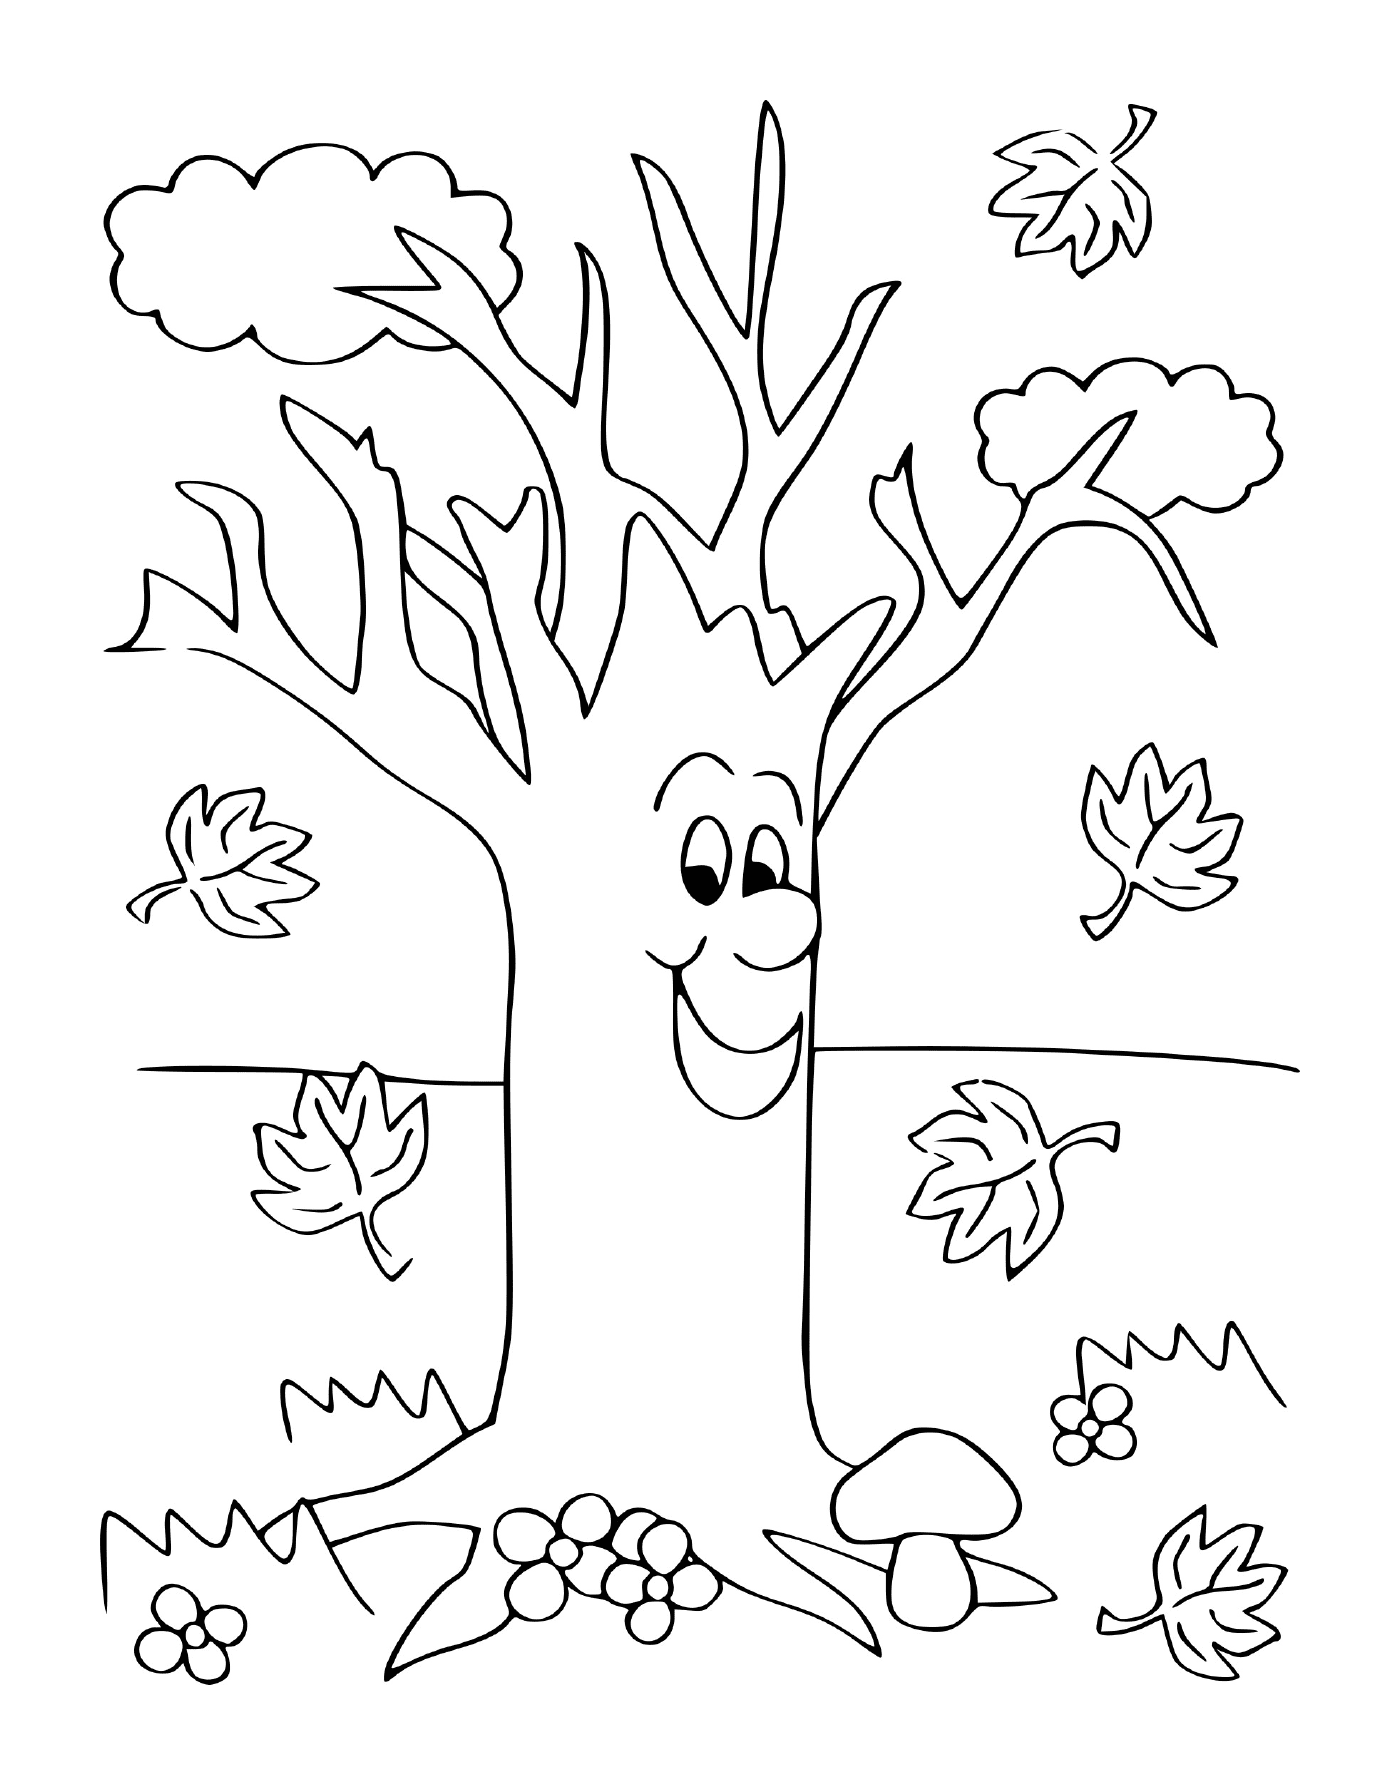  Un albero con le foglie 